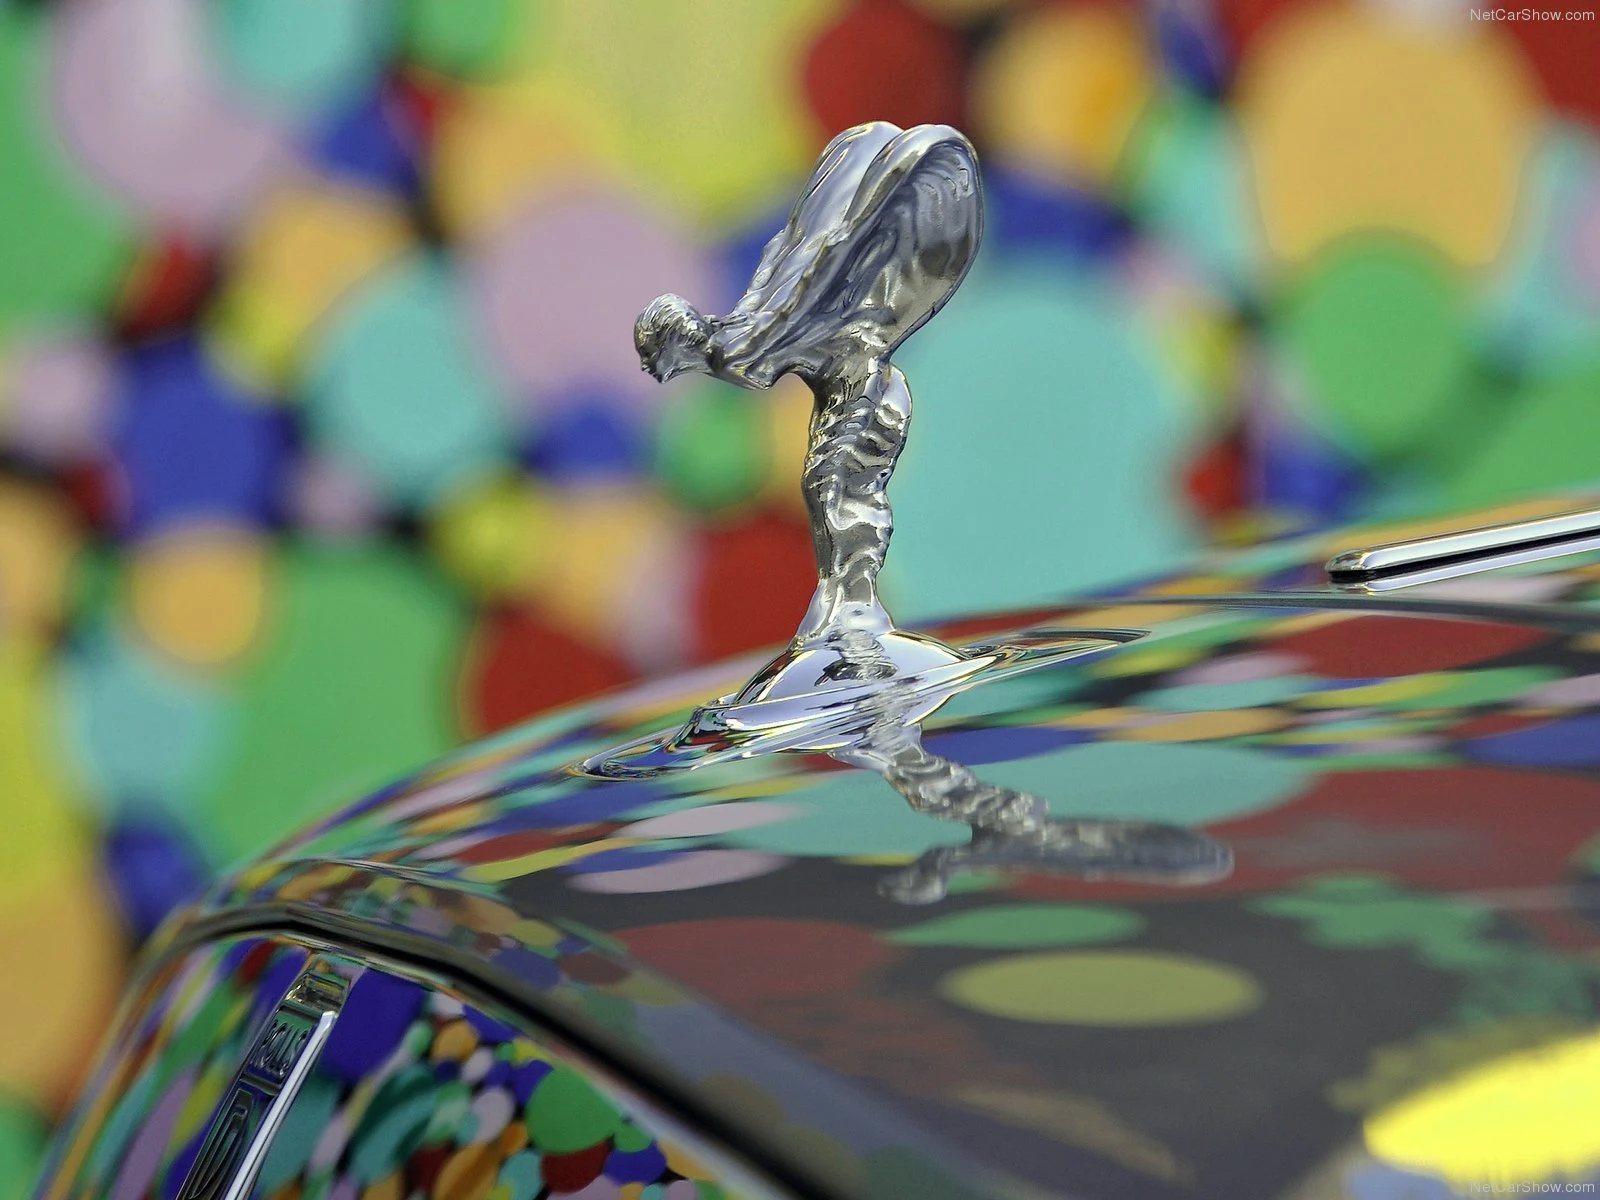 Hình ảnh xe siêu sang Rolls-Royce Ghost 2010 & nội ngoại thất